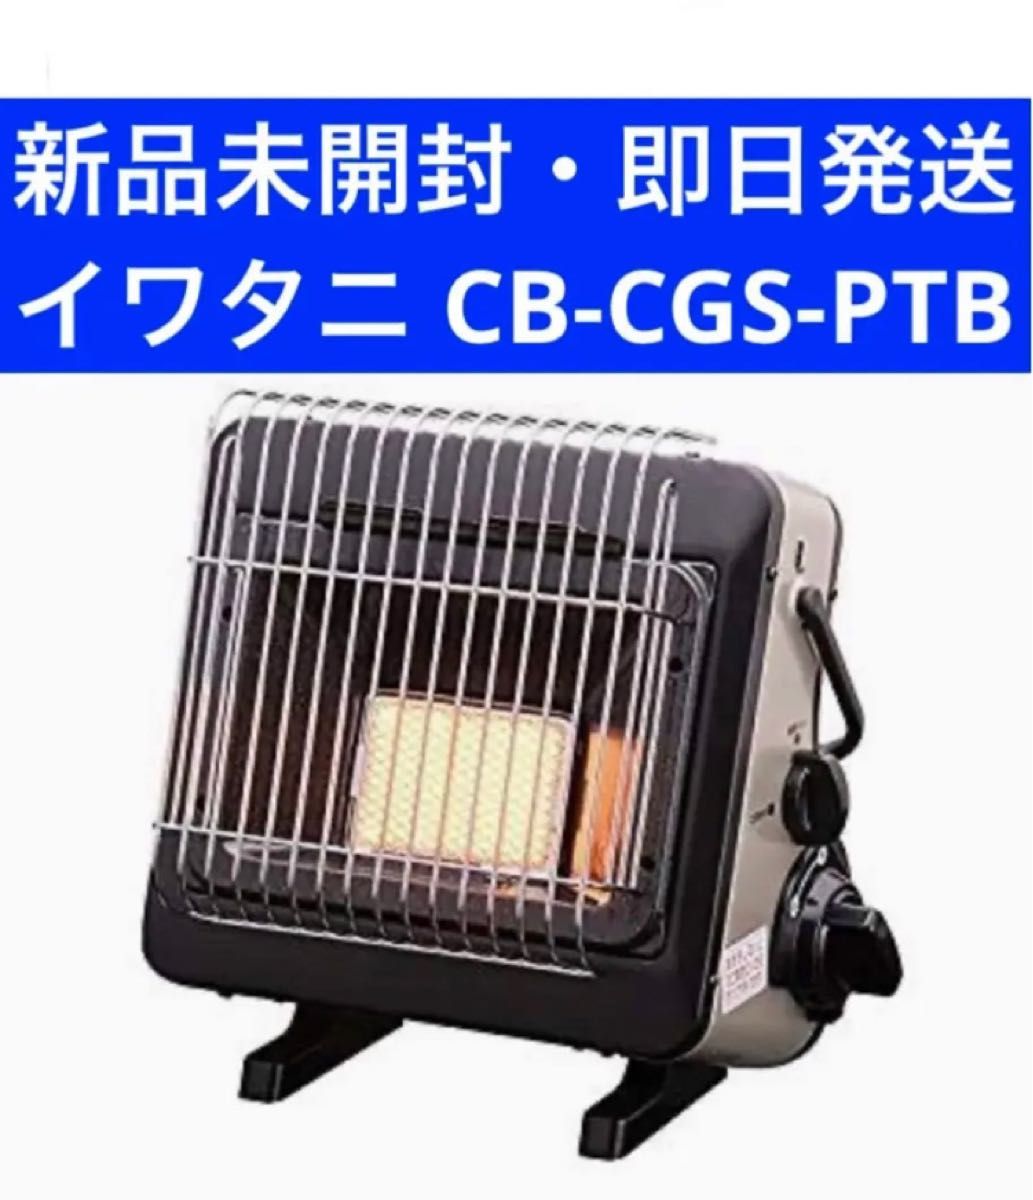 美品 カセットガスストーブ ポータブルタイプ マイ暖 CB-CGS-PTB - 空調